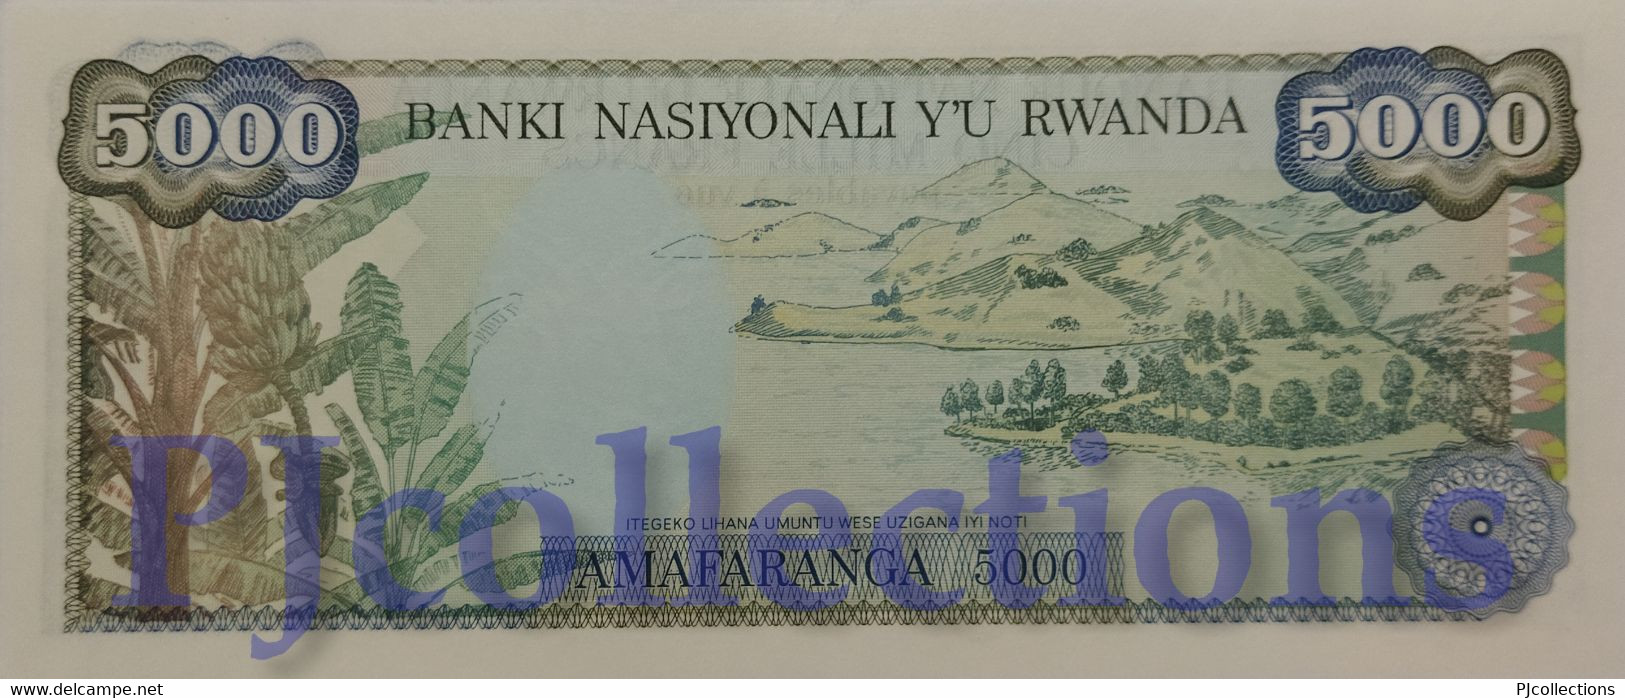 RWANDA 5000 FRANCS 1988 PICK 22 UNC - Rwanda